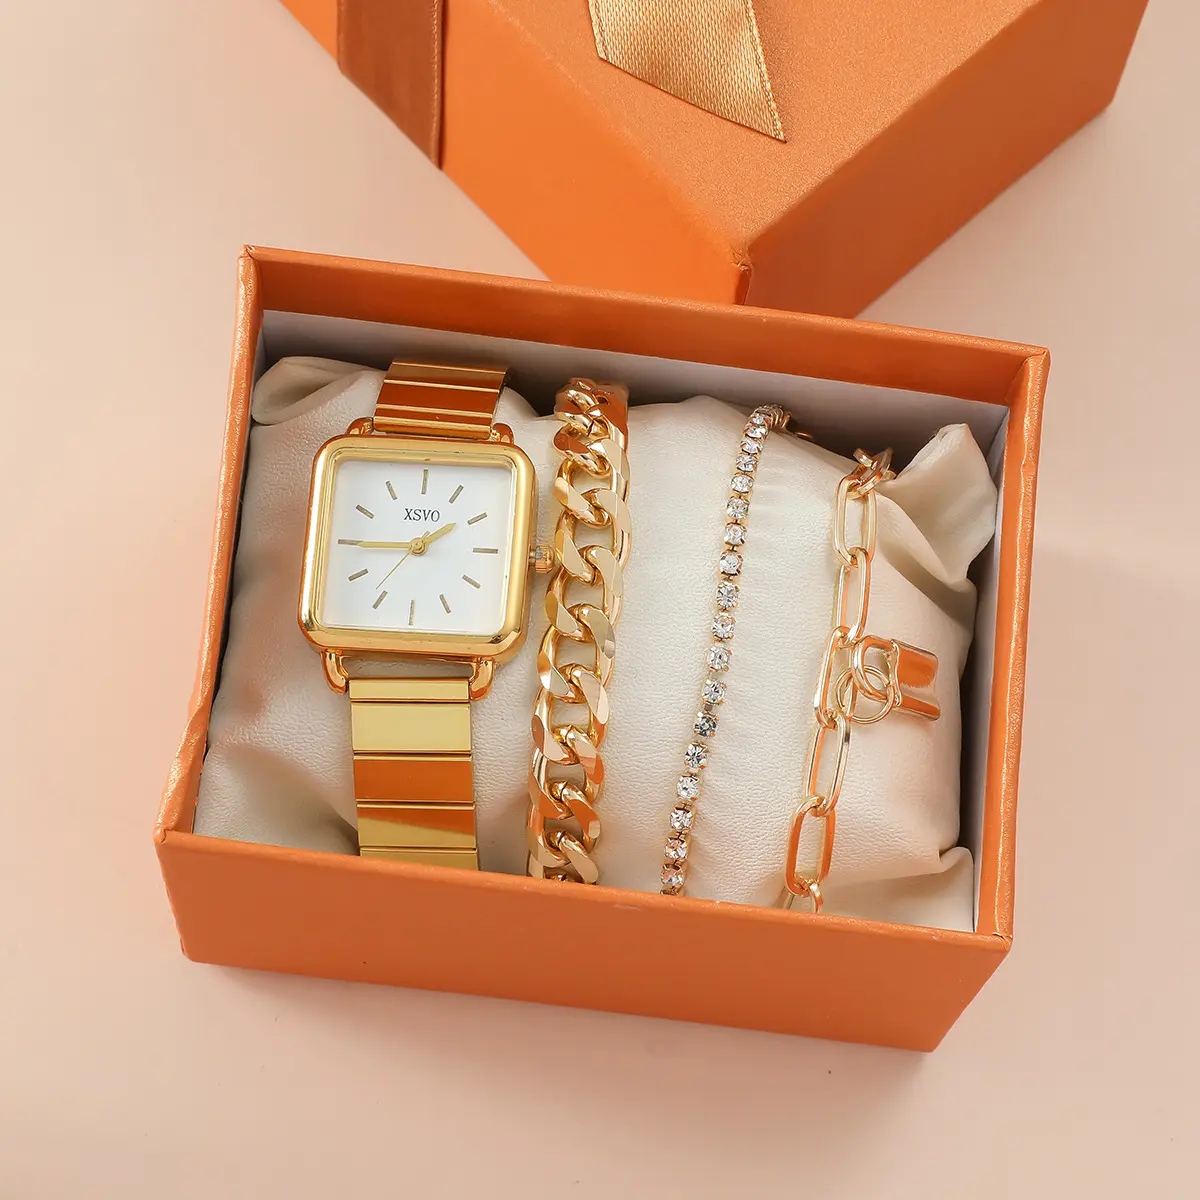 Reloj de lujo 1 Juego de números romanos de moda con incrustaciones de diamantes reloj de oro pulseras conjunto de joyería regalo para mujeres